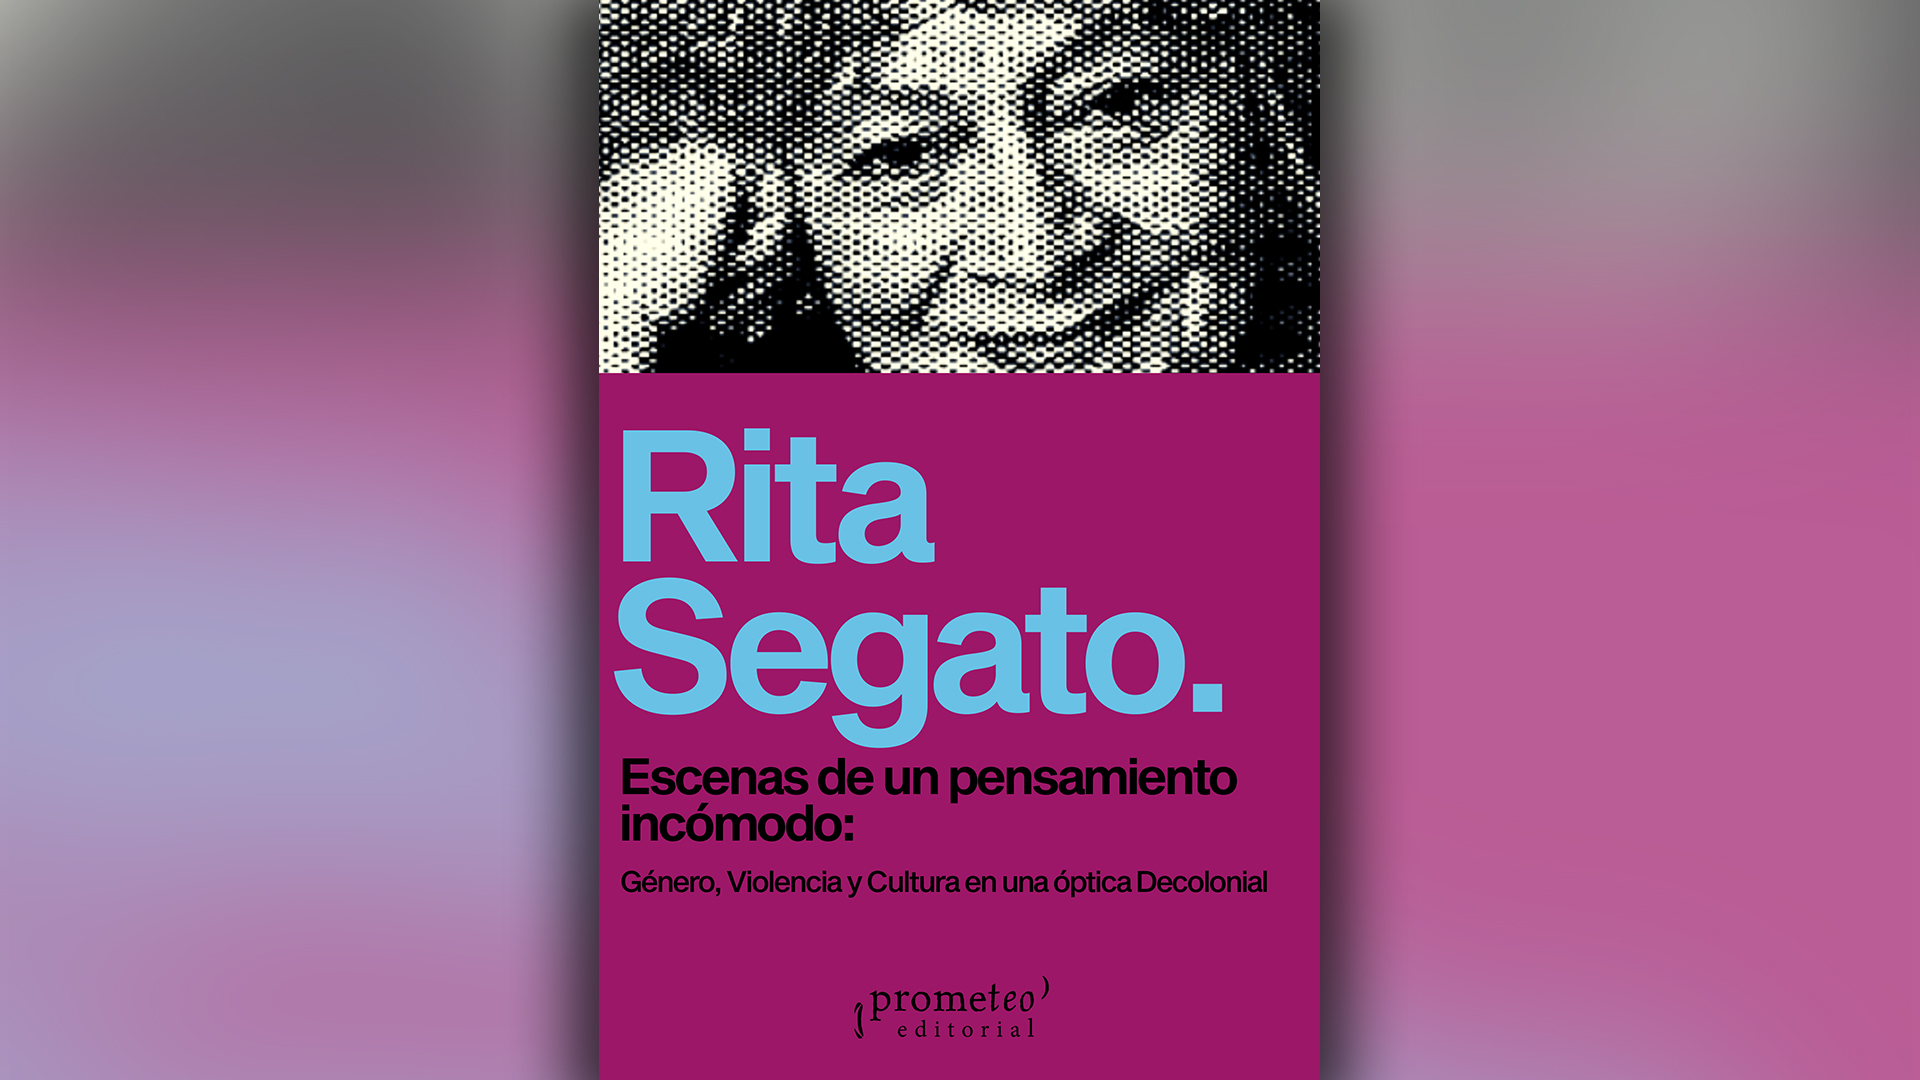 Portada de "Escenas de un pensamiento incómodo: género, violencia y cultura en una óptica decolonial", de Rita Segato, publicado por Prometeo Ediciones. 